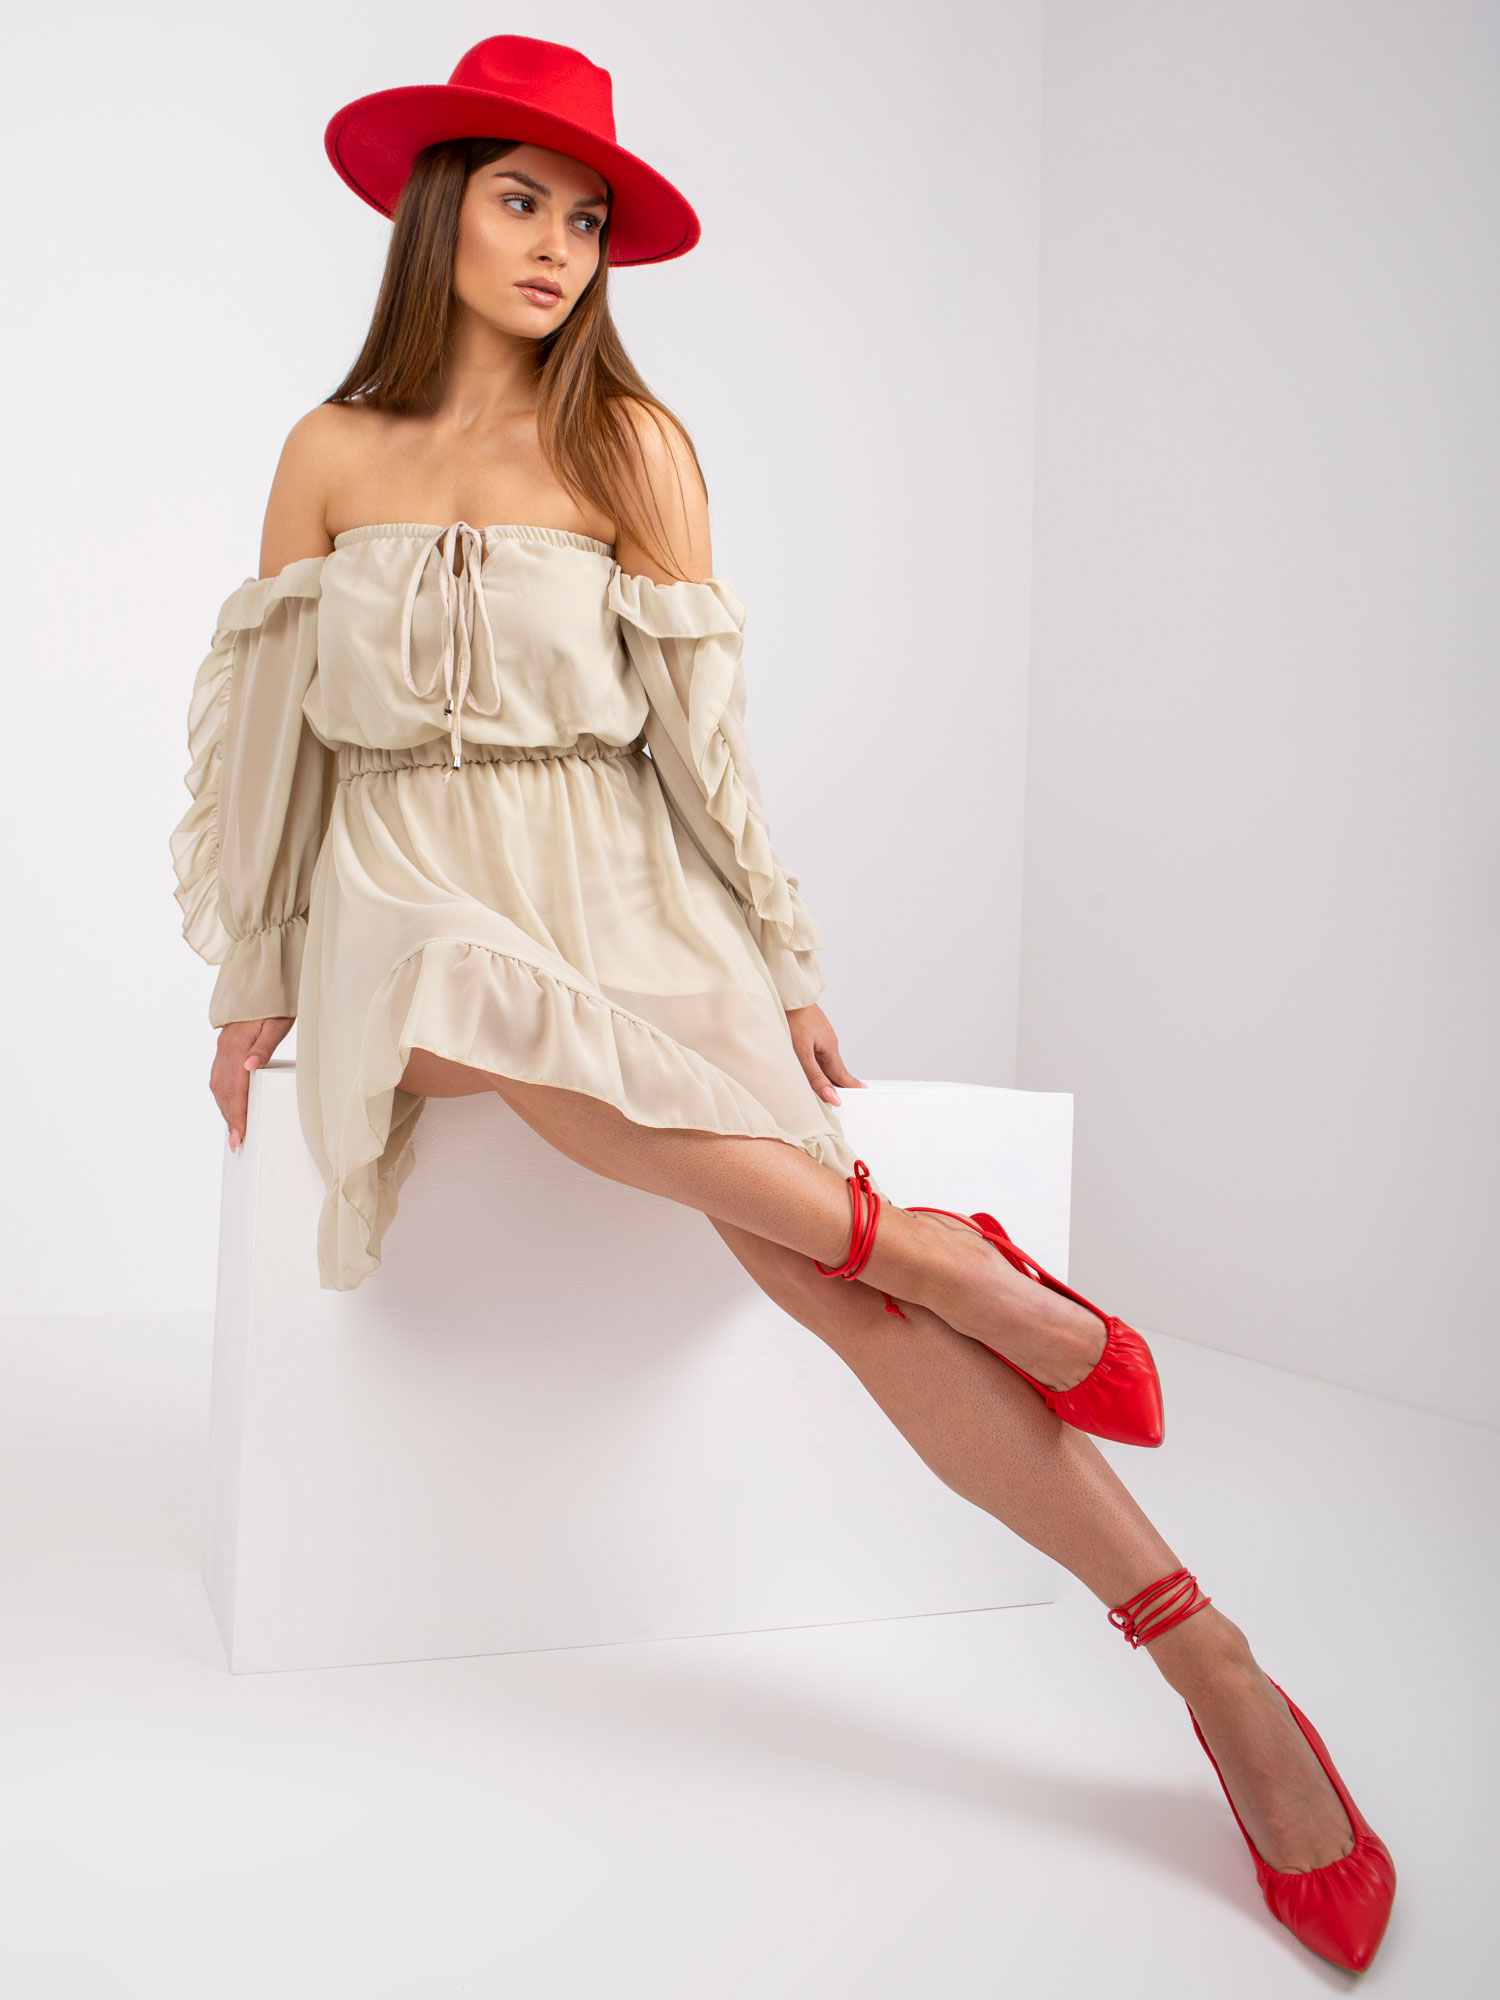 Czerwone szpilki: klasyk w kobiecej garderobie